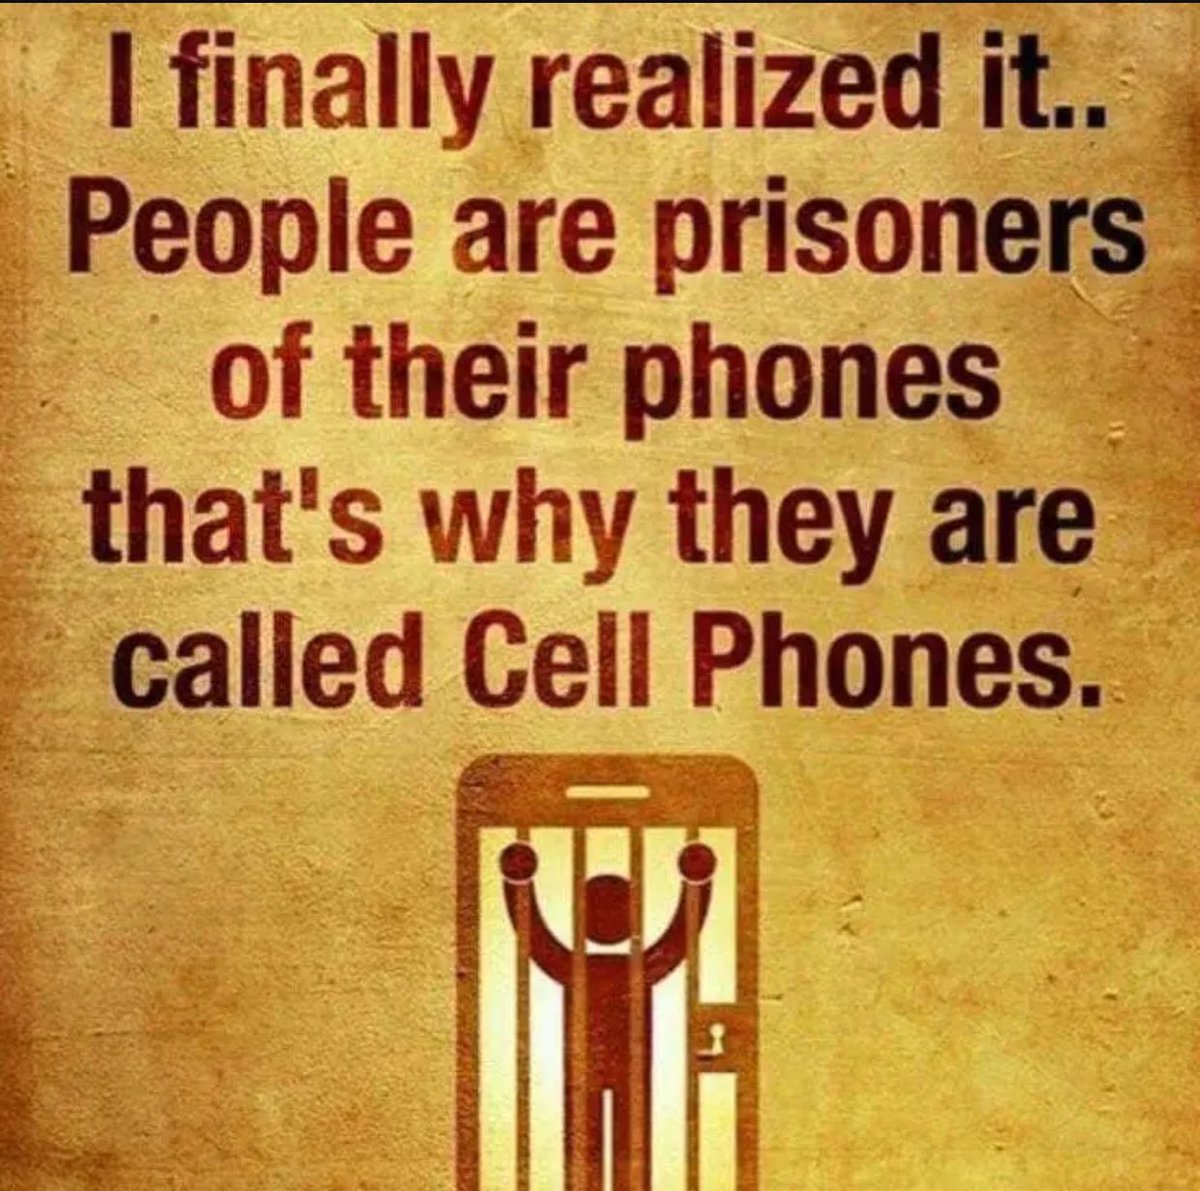 #Cellphone #prisoner #breakfree